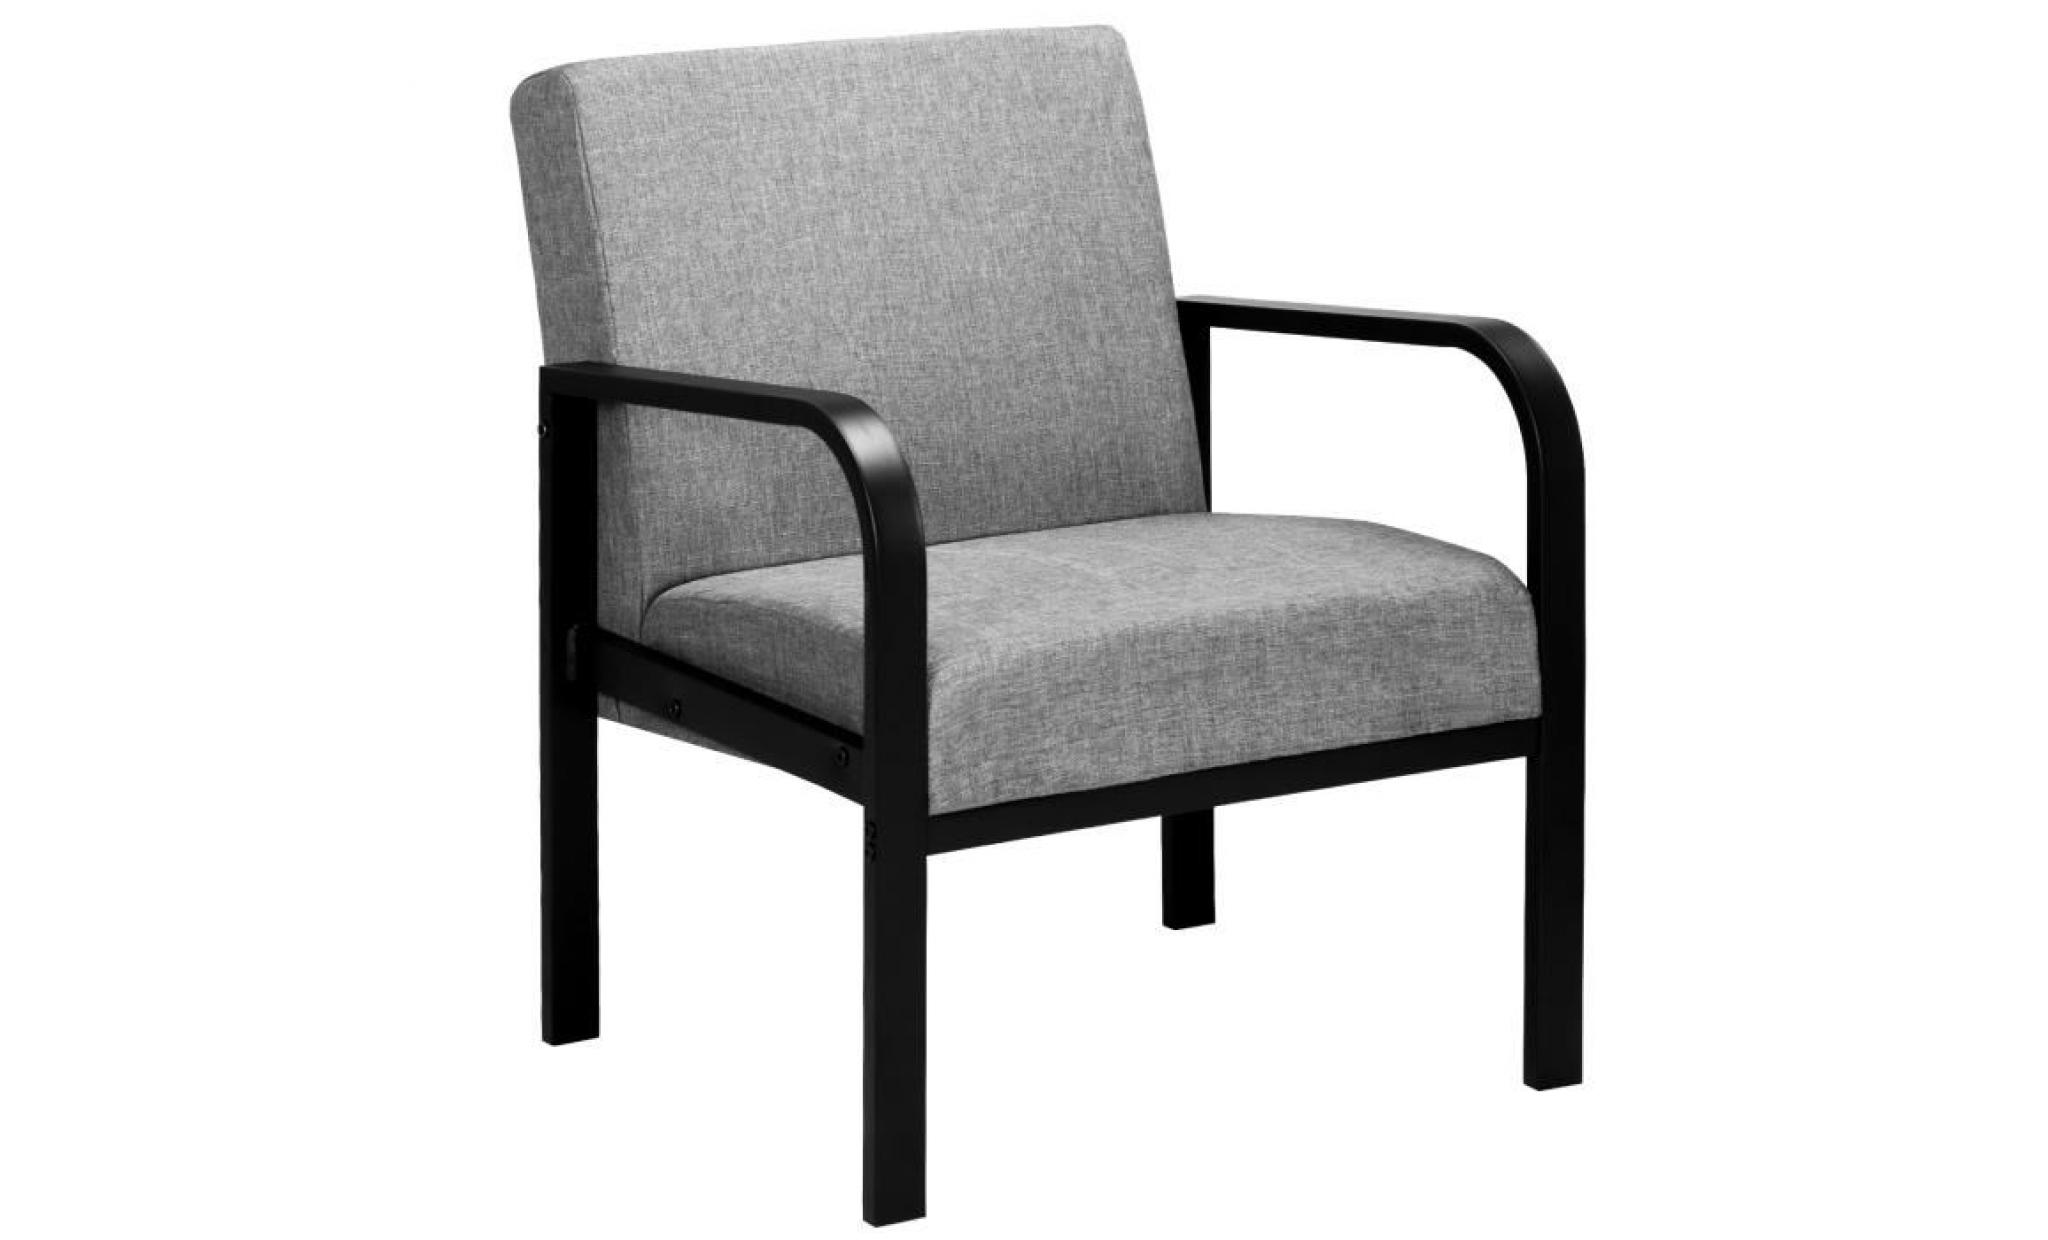 woltu fauteuil relax en acier et lin,fauteuil de jardin, fauteuil de télévision,siège bien rembourré en lin, gris